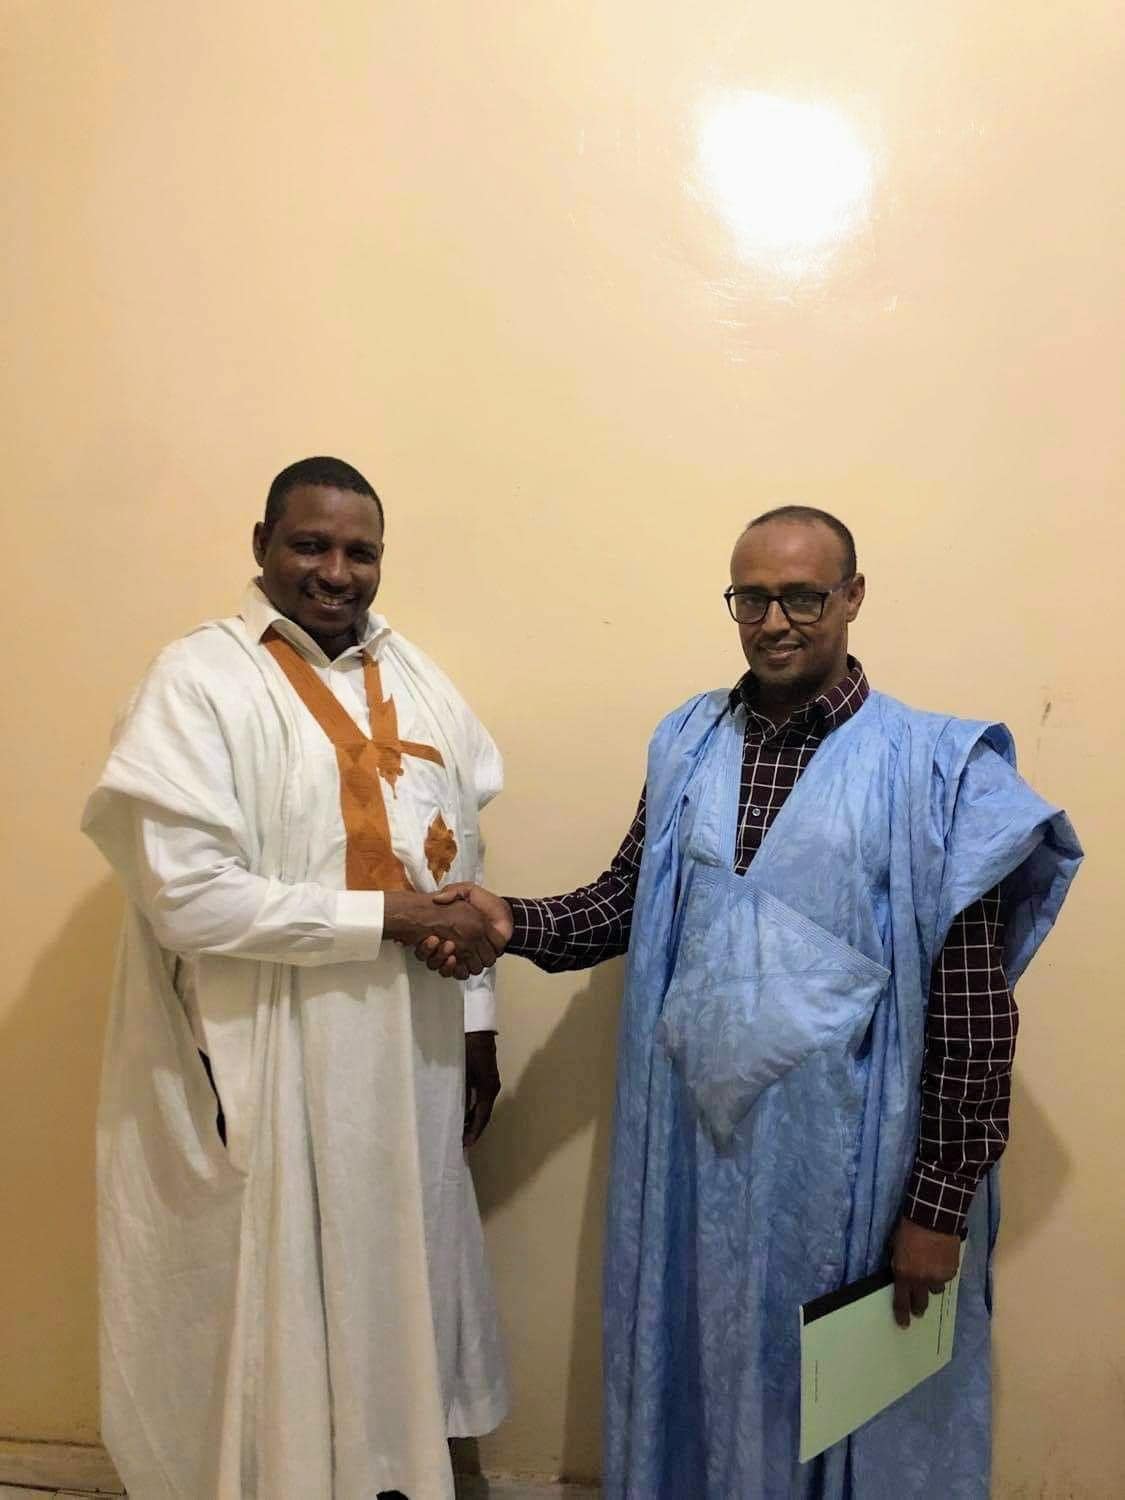 صورة مرشح للرئاسة الغامبية من أصول موريتانية